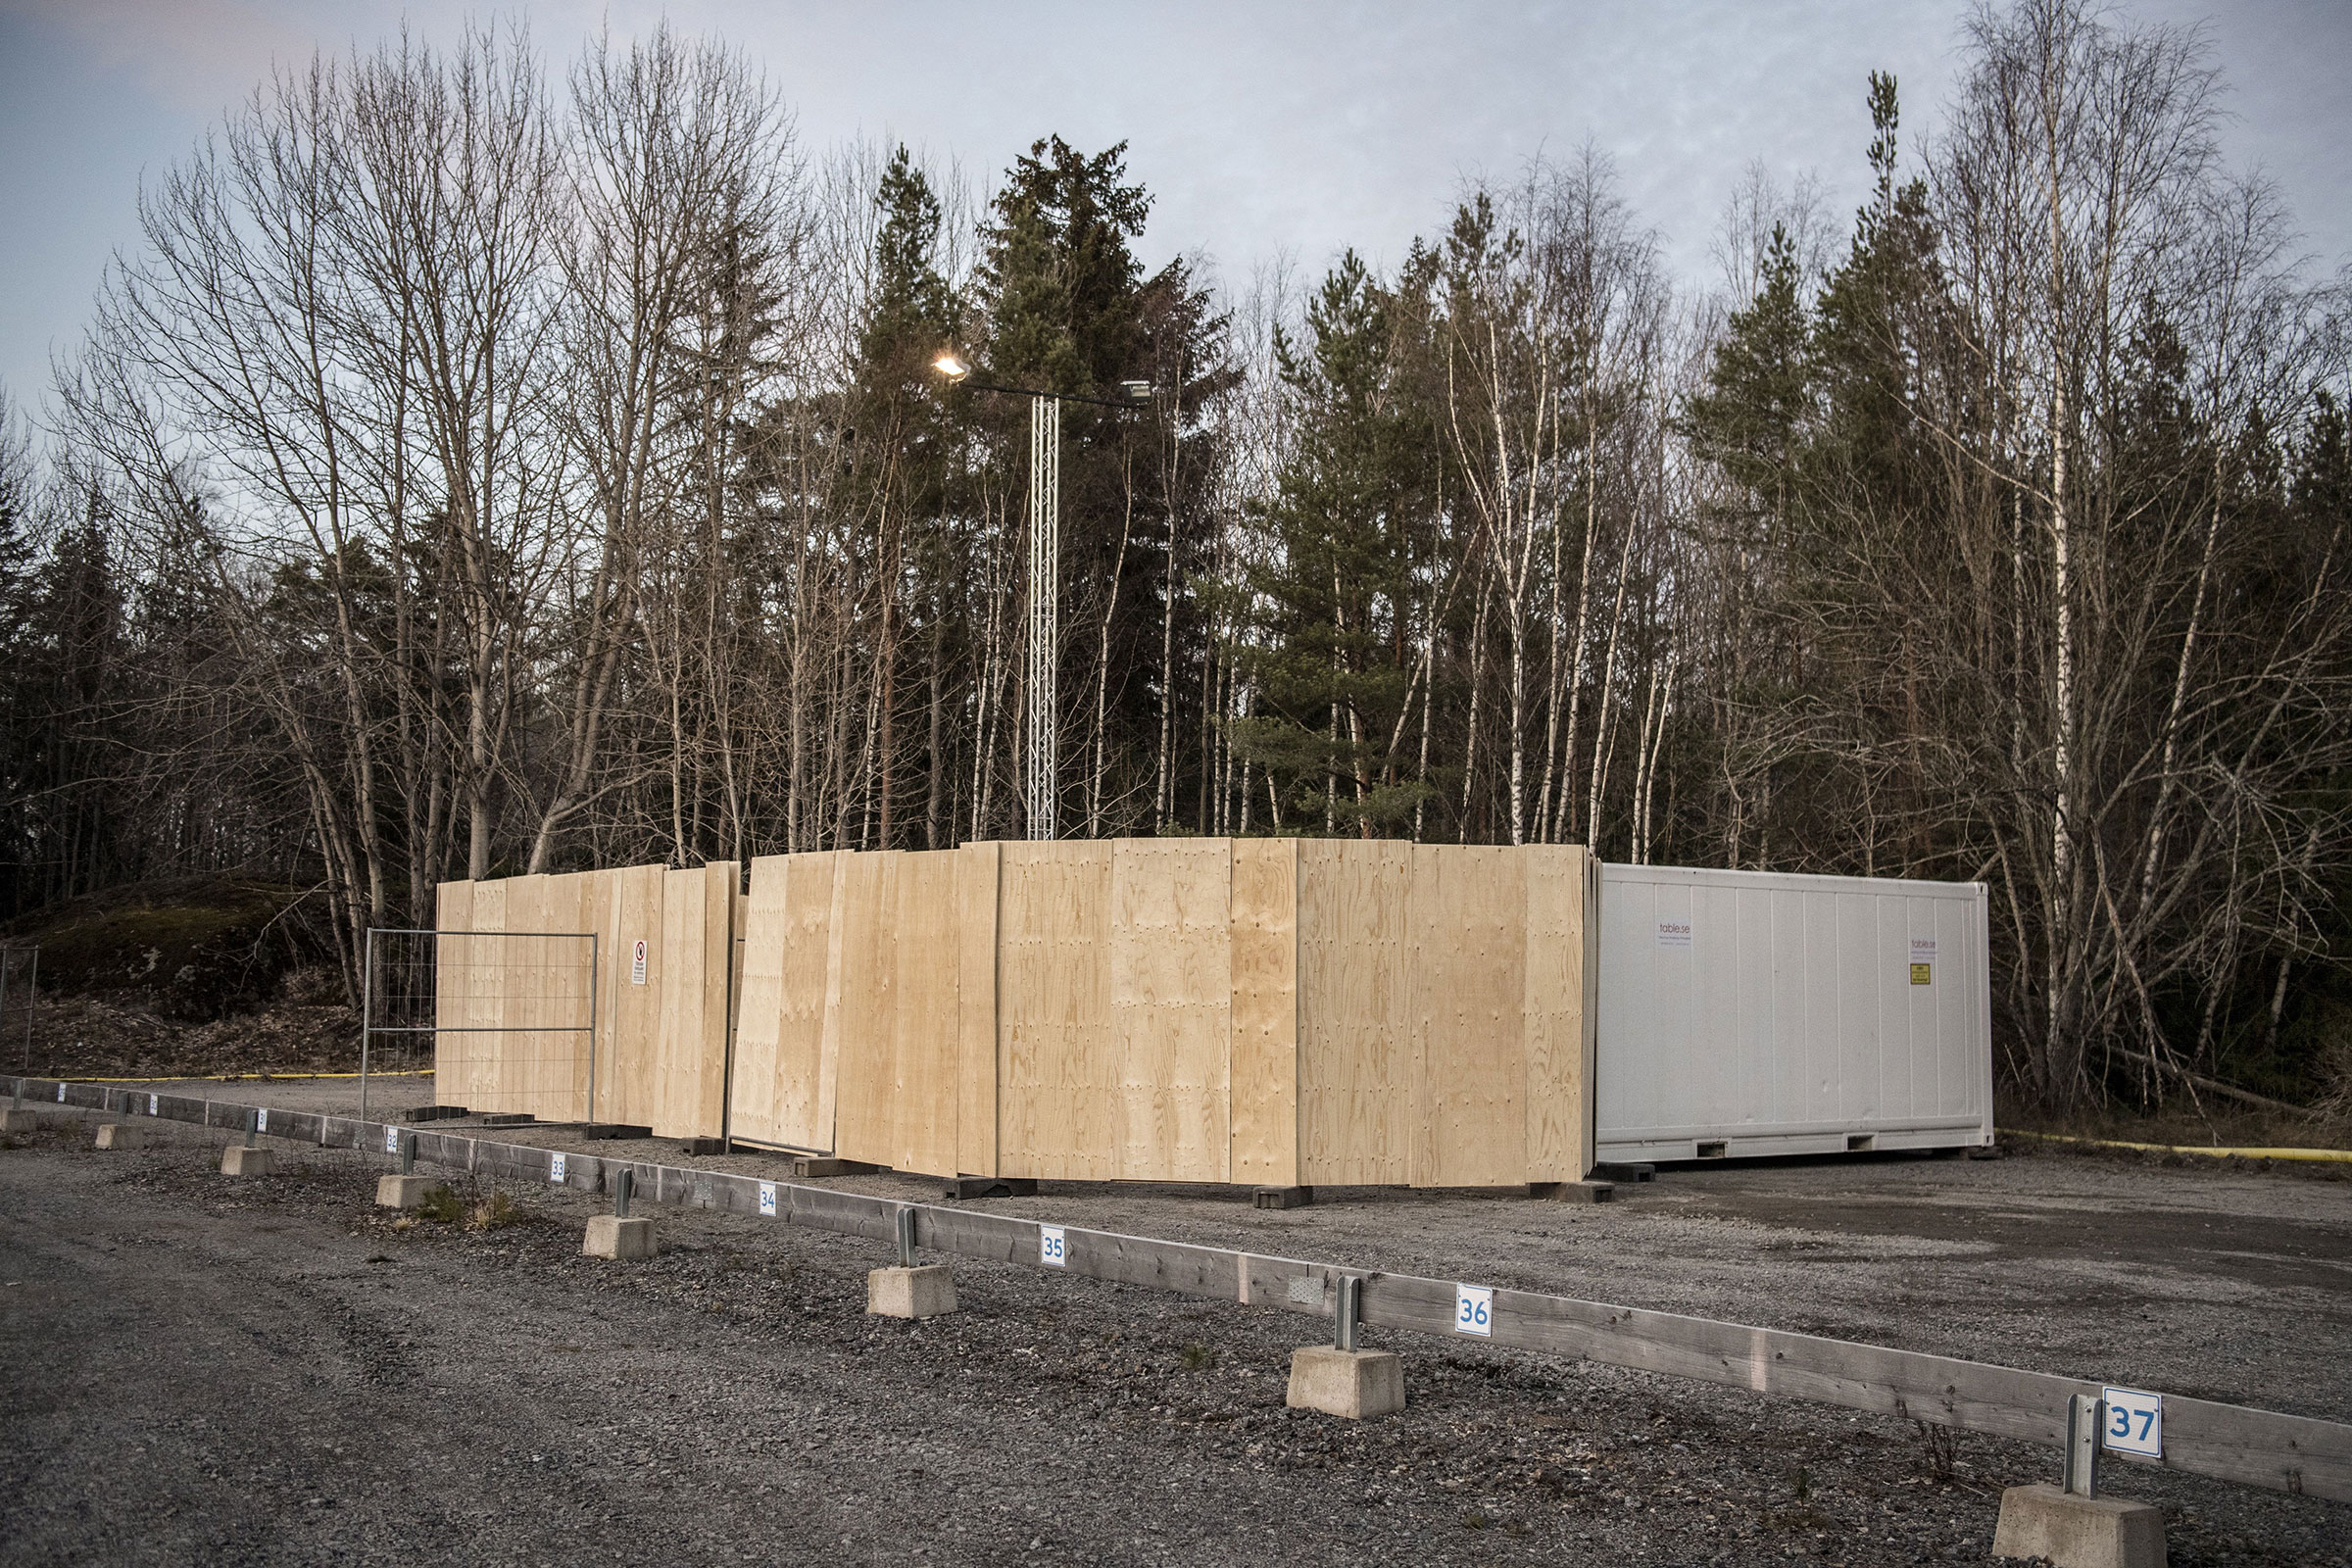 Los contenedores refrigerados destinados a ser utilizados como morgues improvisados ​​para mantener en espera a las personas que murieron de COVID-19 en espera se instalaron detrás del Hospital Universitario Karolinska en Huddinge, Suecia, el 26 de marzo de 2020.